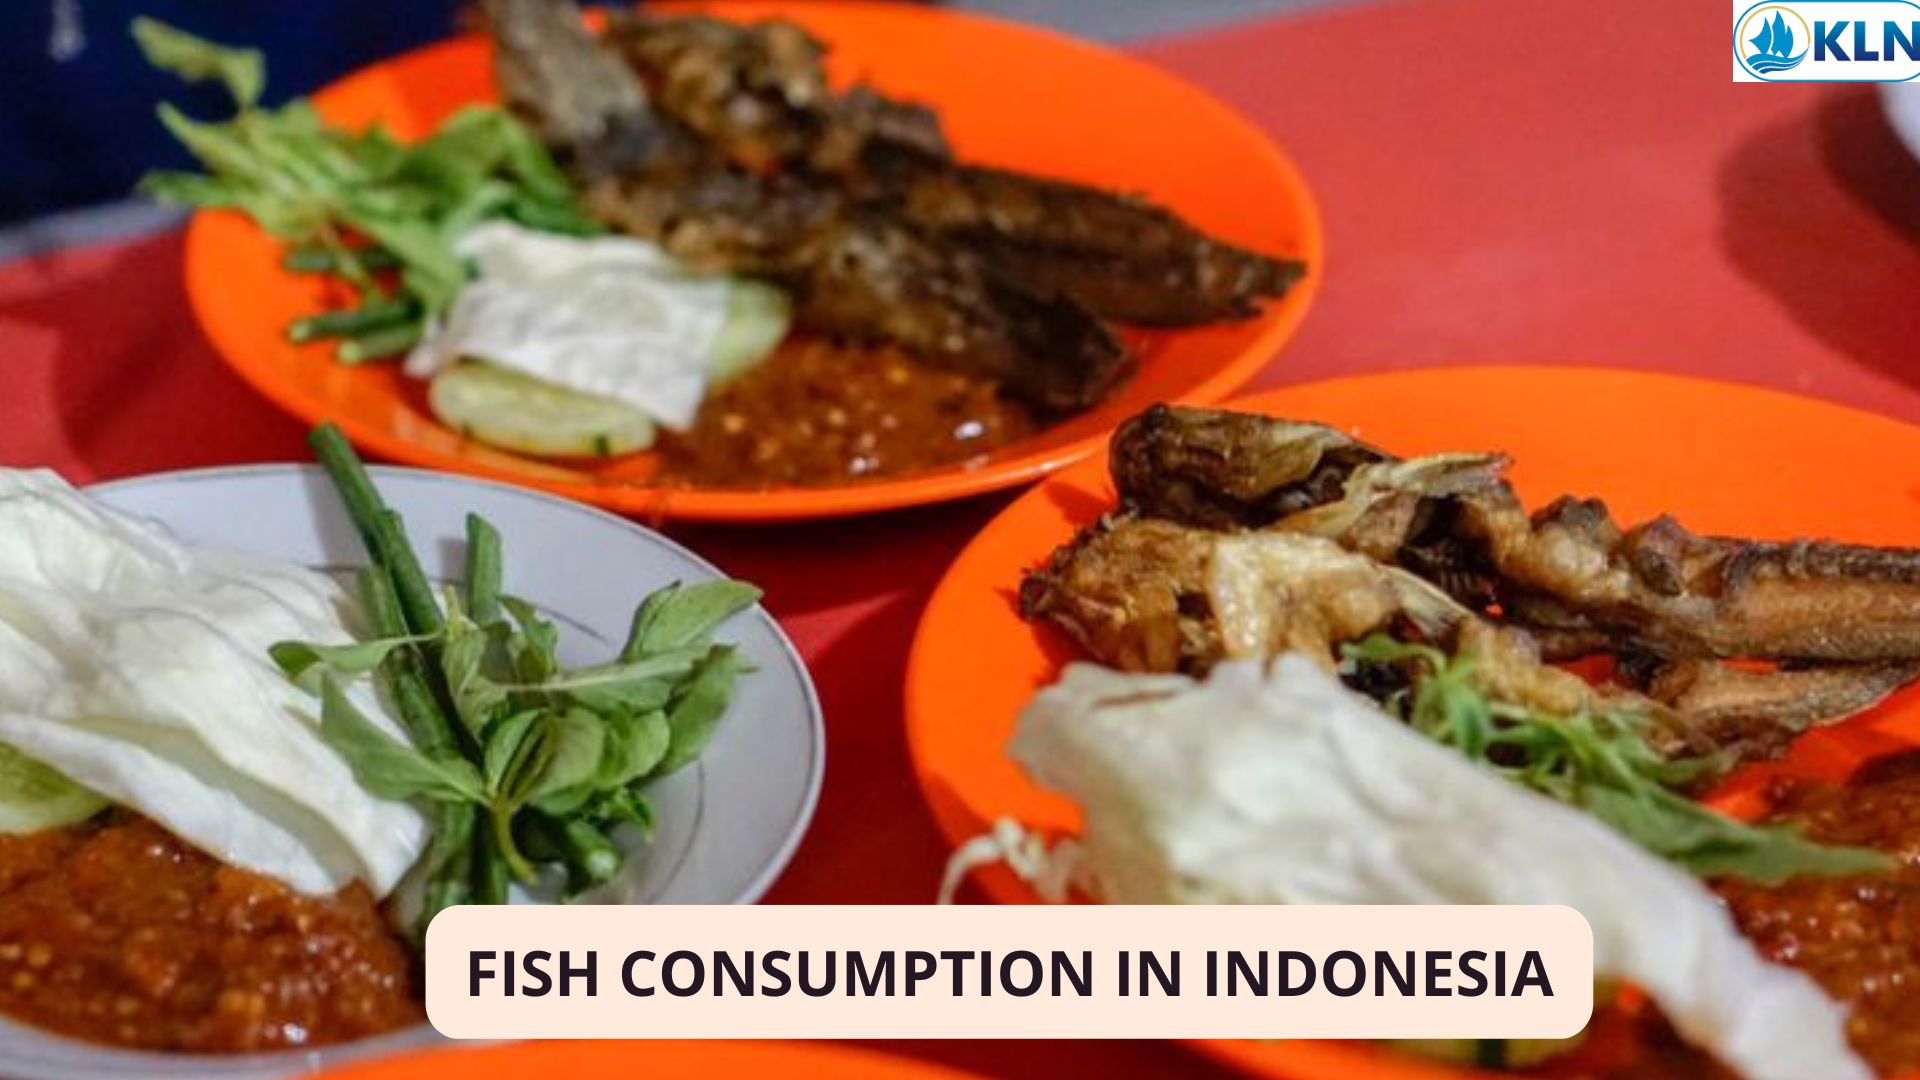 FISH CONSUMPTION IN INDONESIA